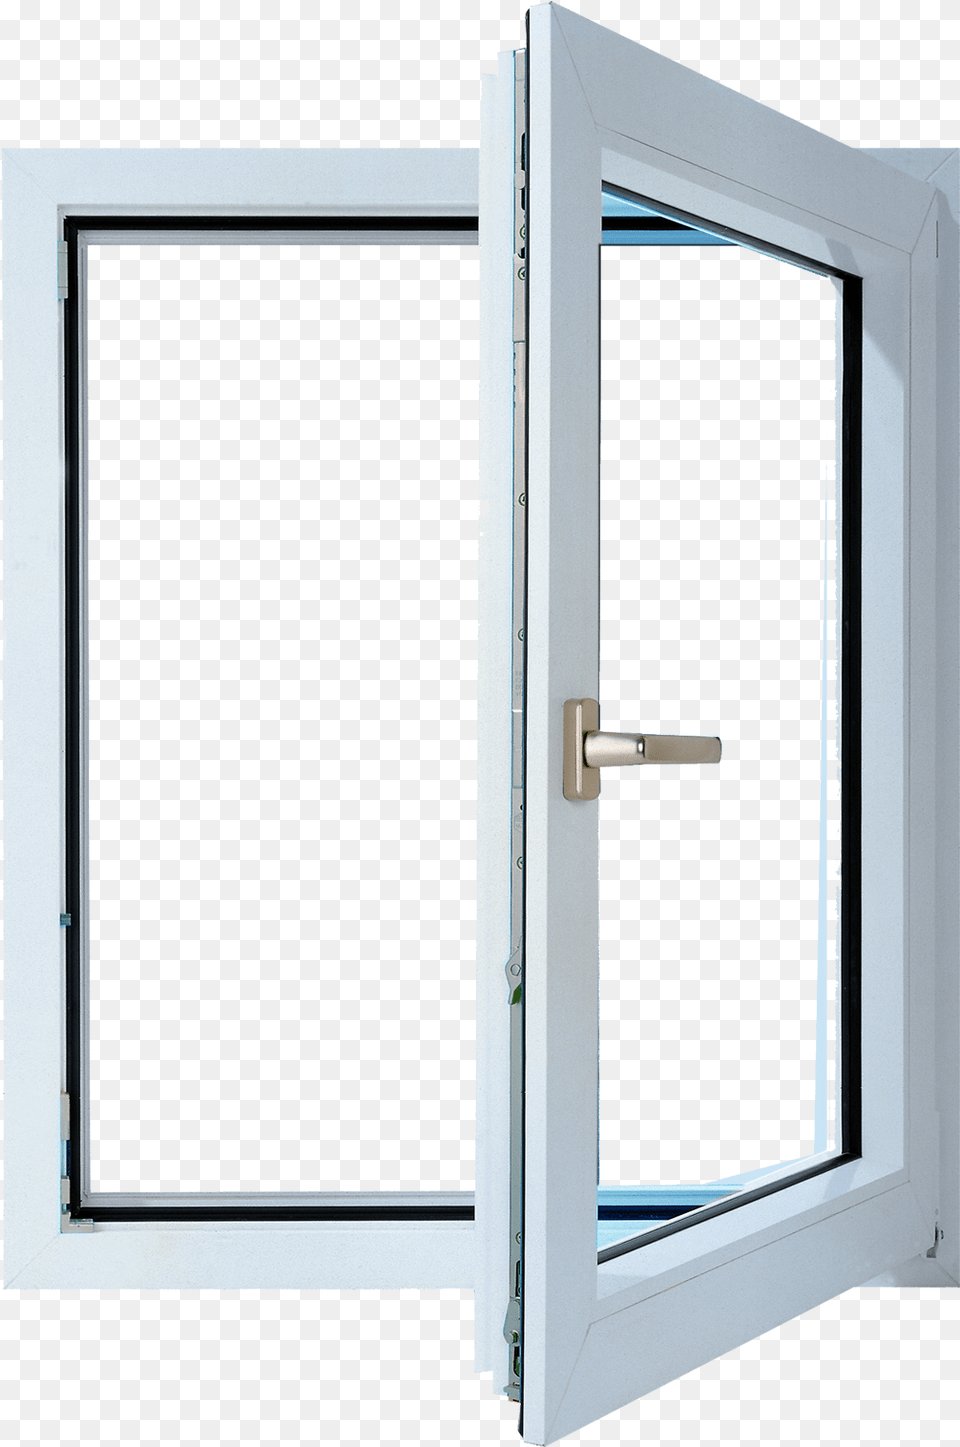 Open Window, Door, Cabinet, Furniture Free Transparent Png